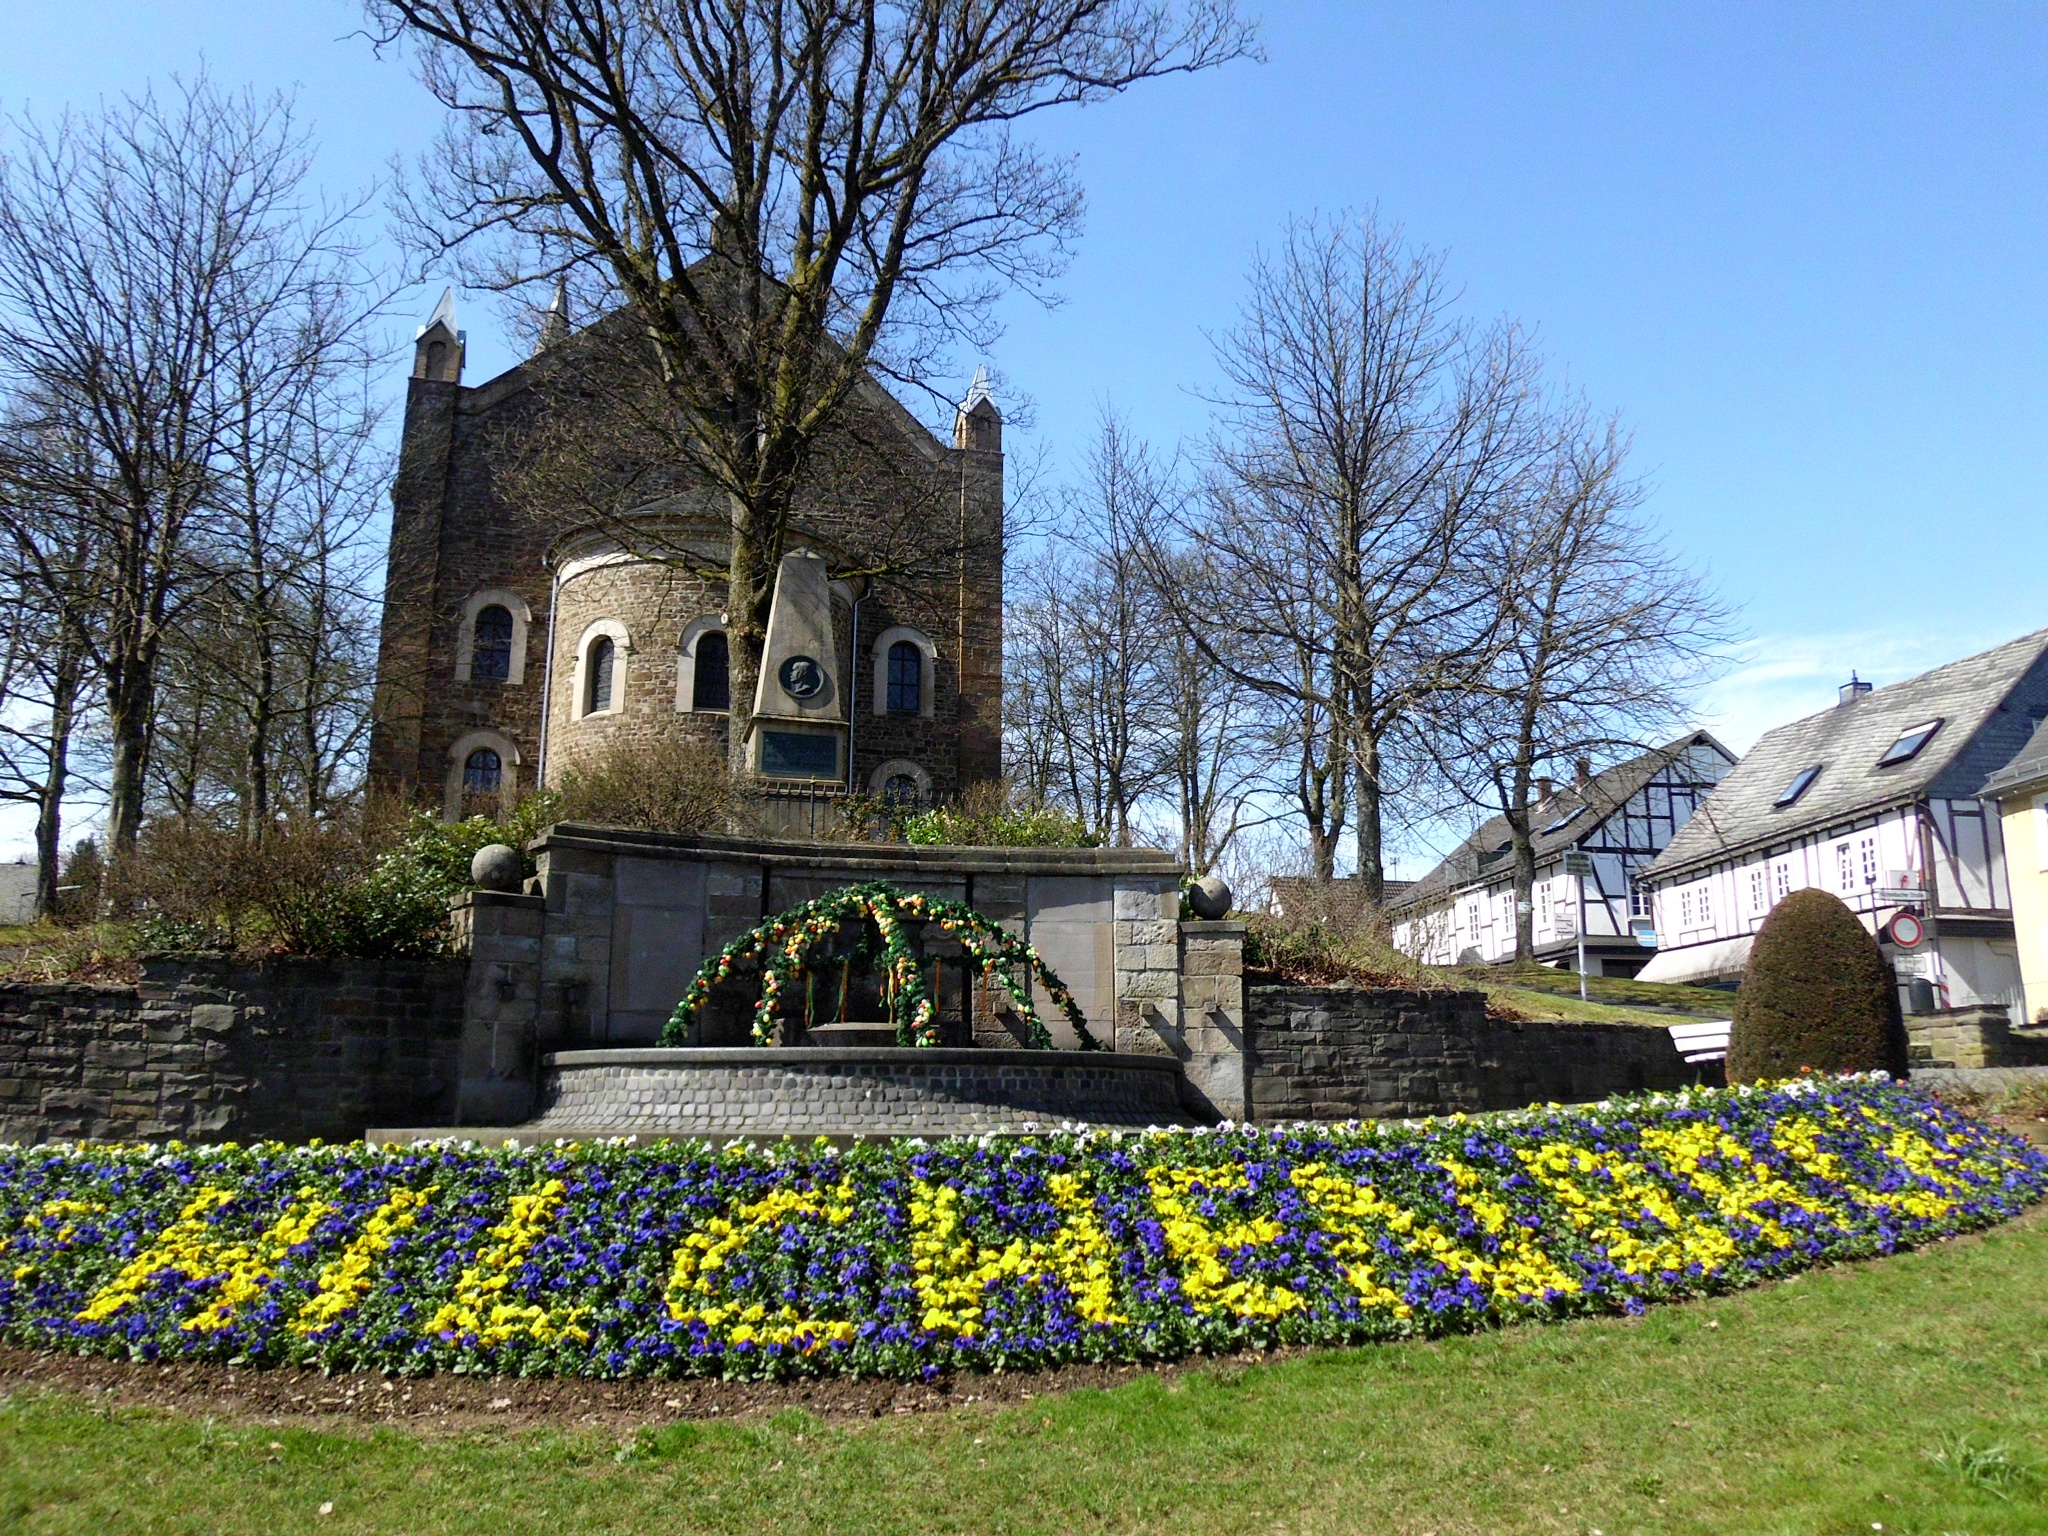 Ev. Kirche von Hilchenbach mit Jung Stilling Denkmal und Bepflanzung vor dem Brunnen. (Foto Susanne Träger)